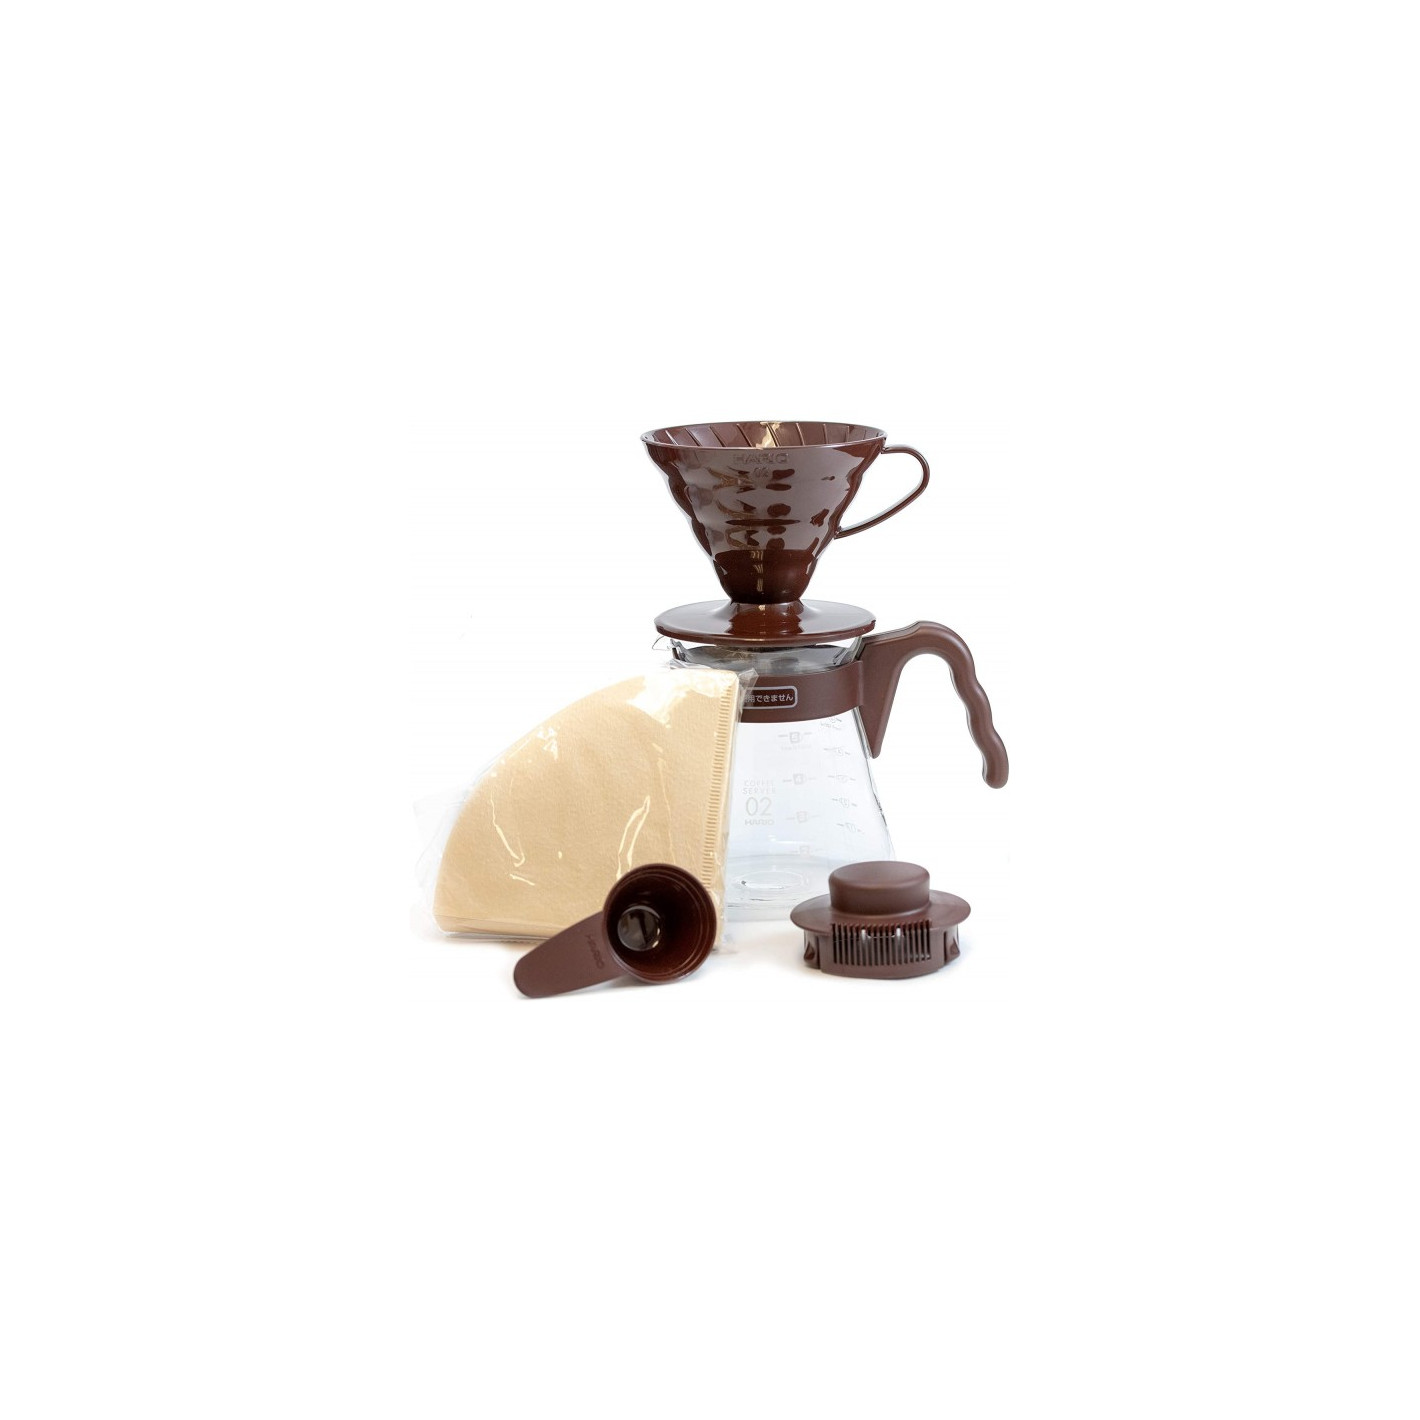 Cafeteras con molinillo: la combinación perfecta para disfrutar de un café  recién molido 